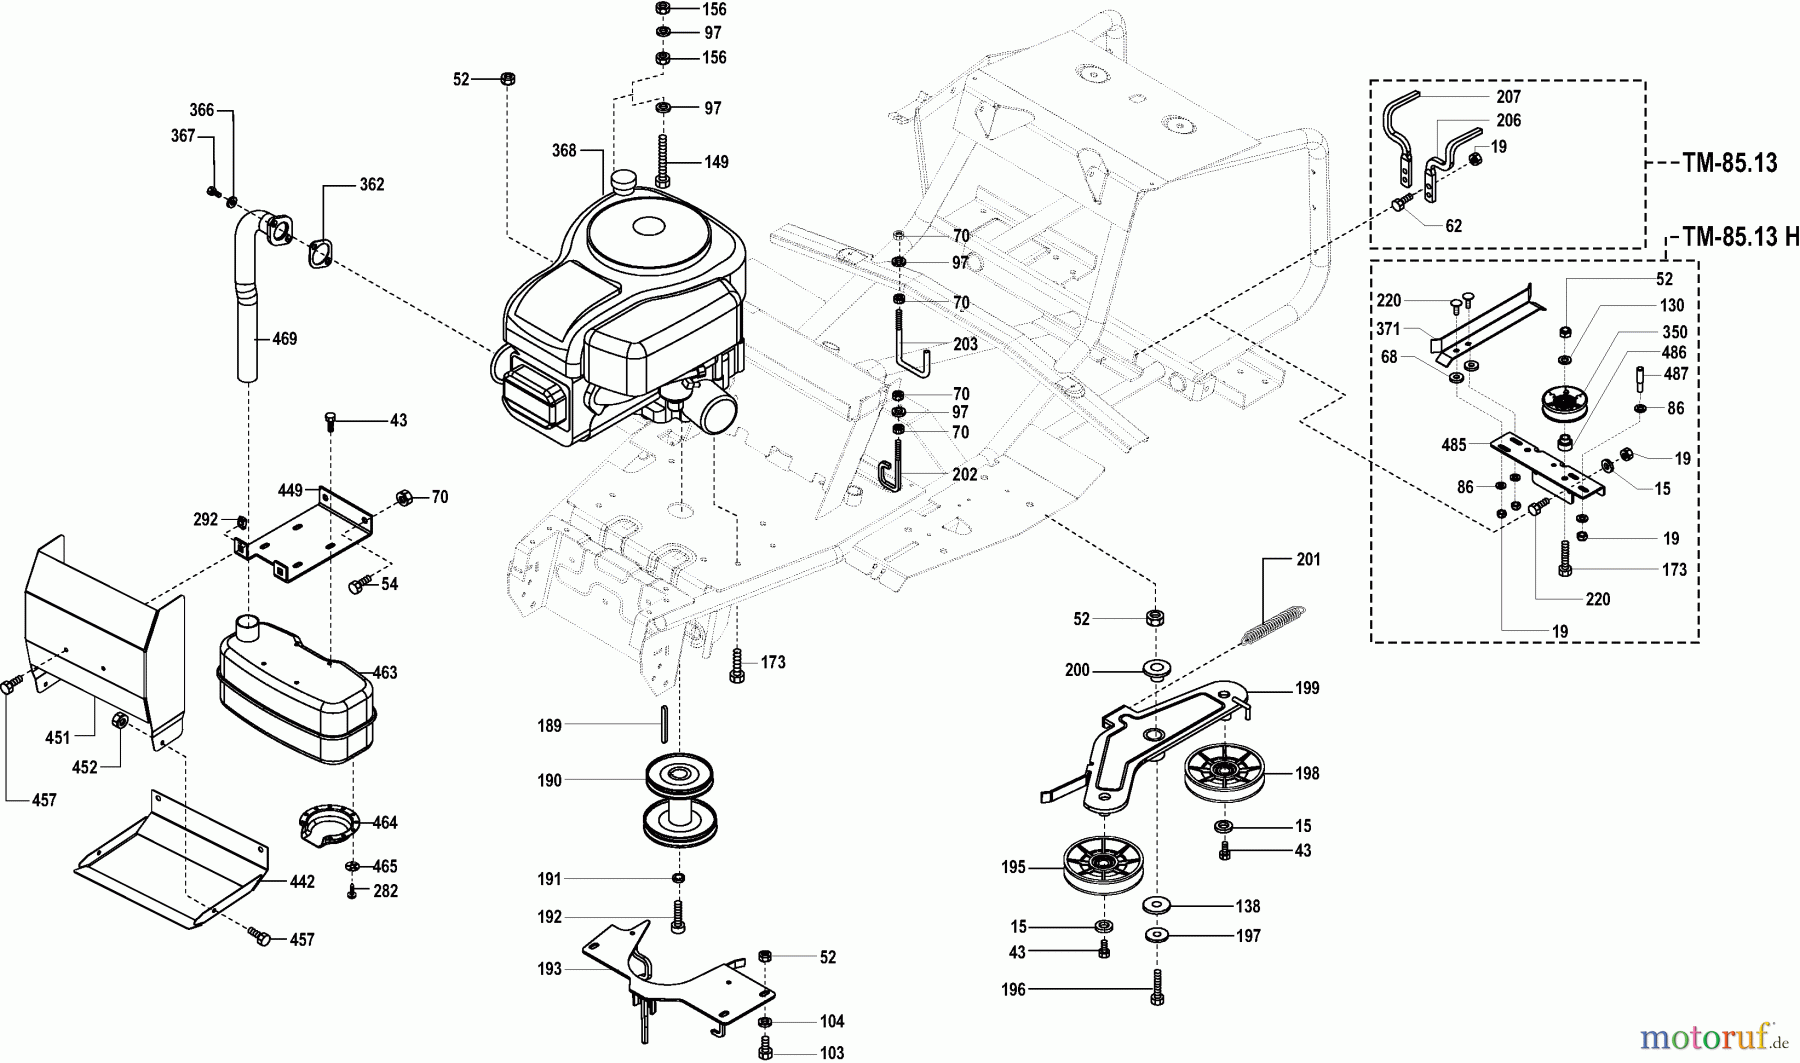  Dolmar Rasentraktoren TM-85.13 H TM-85.13 H (2005) 5  MOTOR